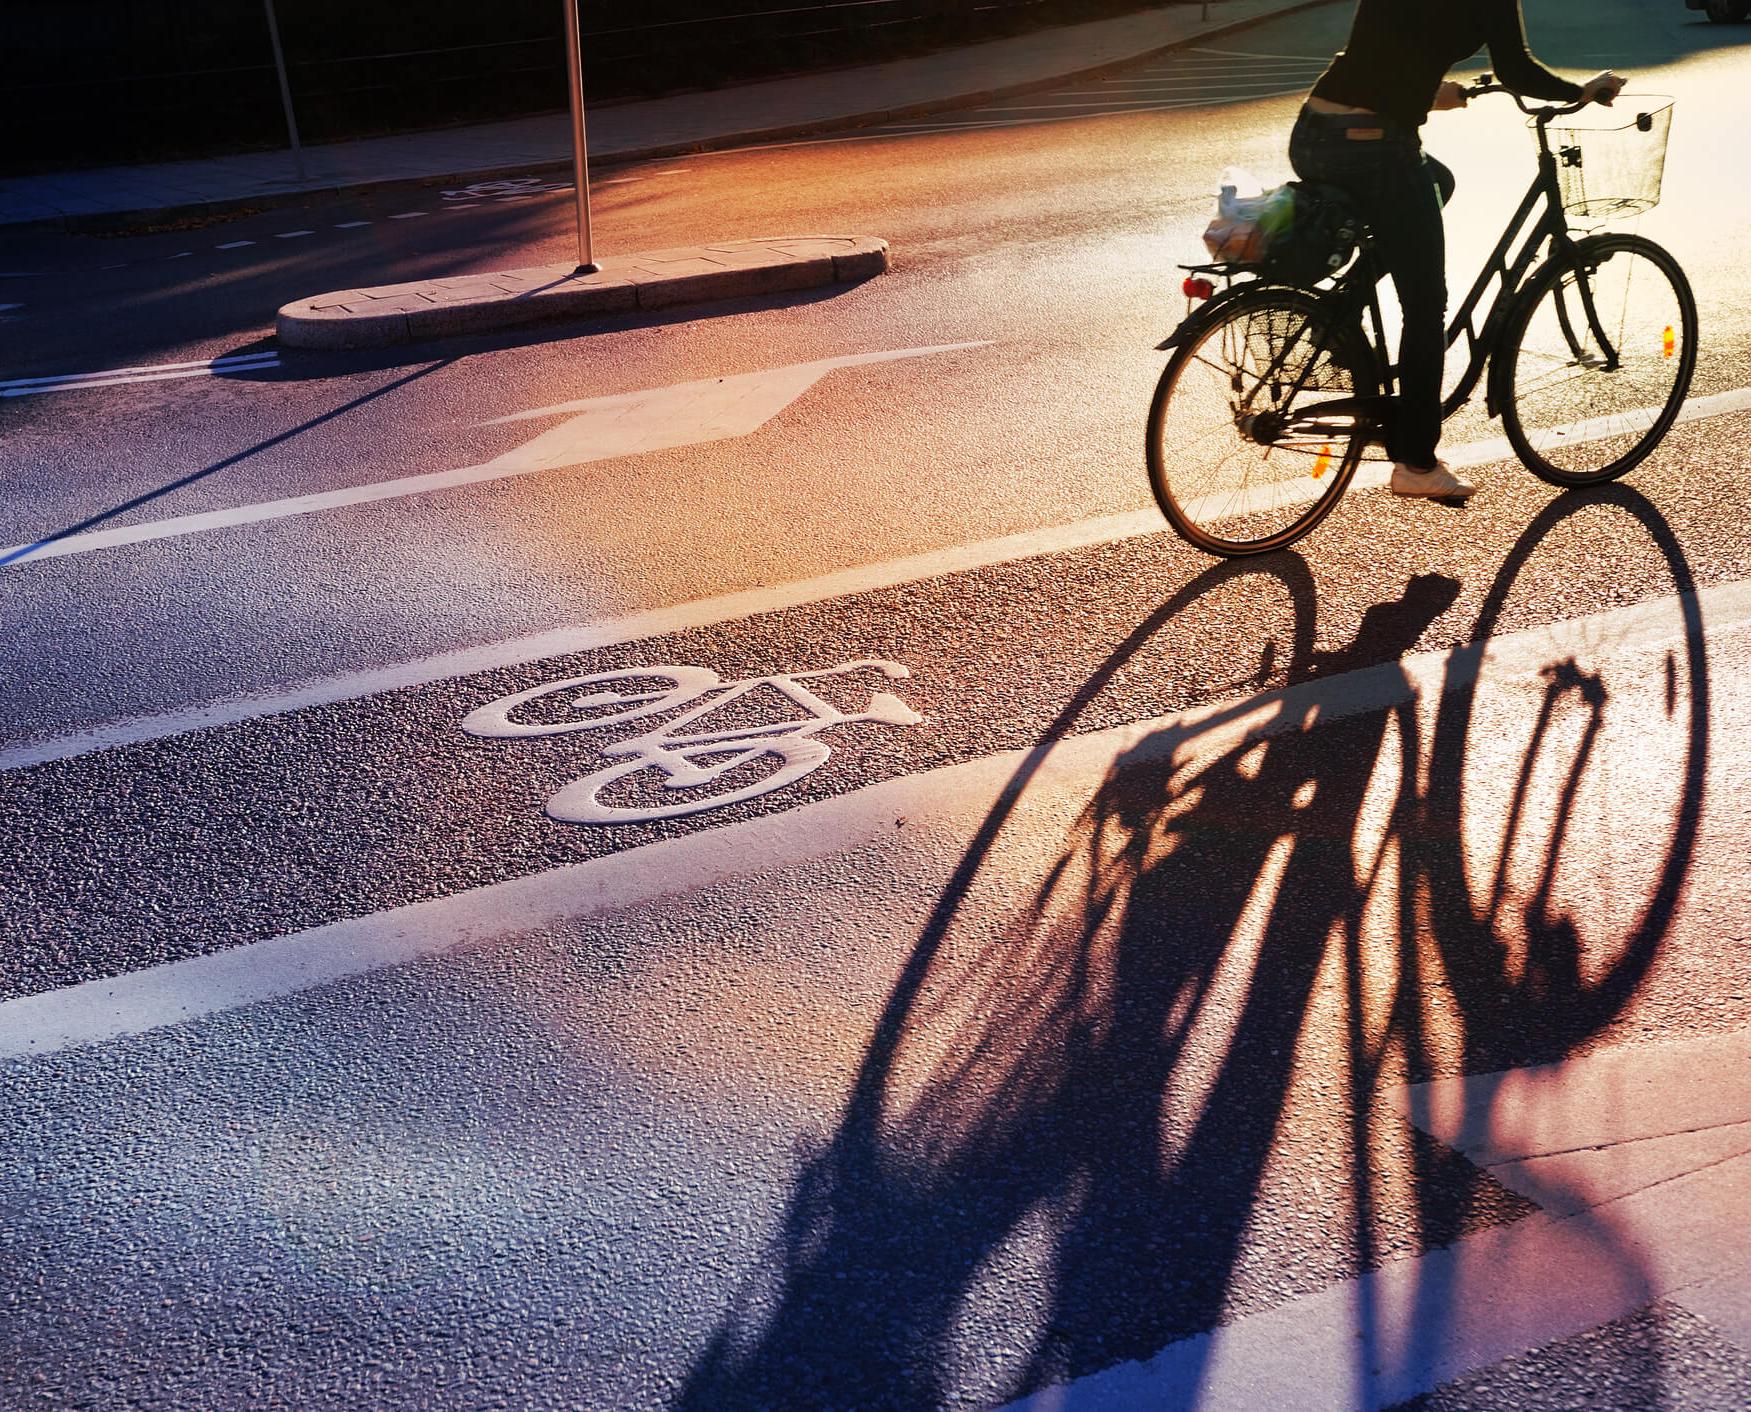 Entretien, équipement, règles de circulation : nos conseils pour faire du vélo en toute sécurité